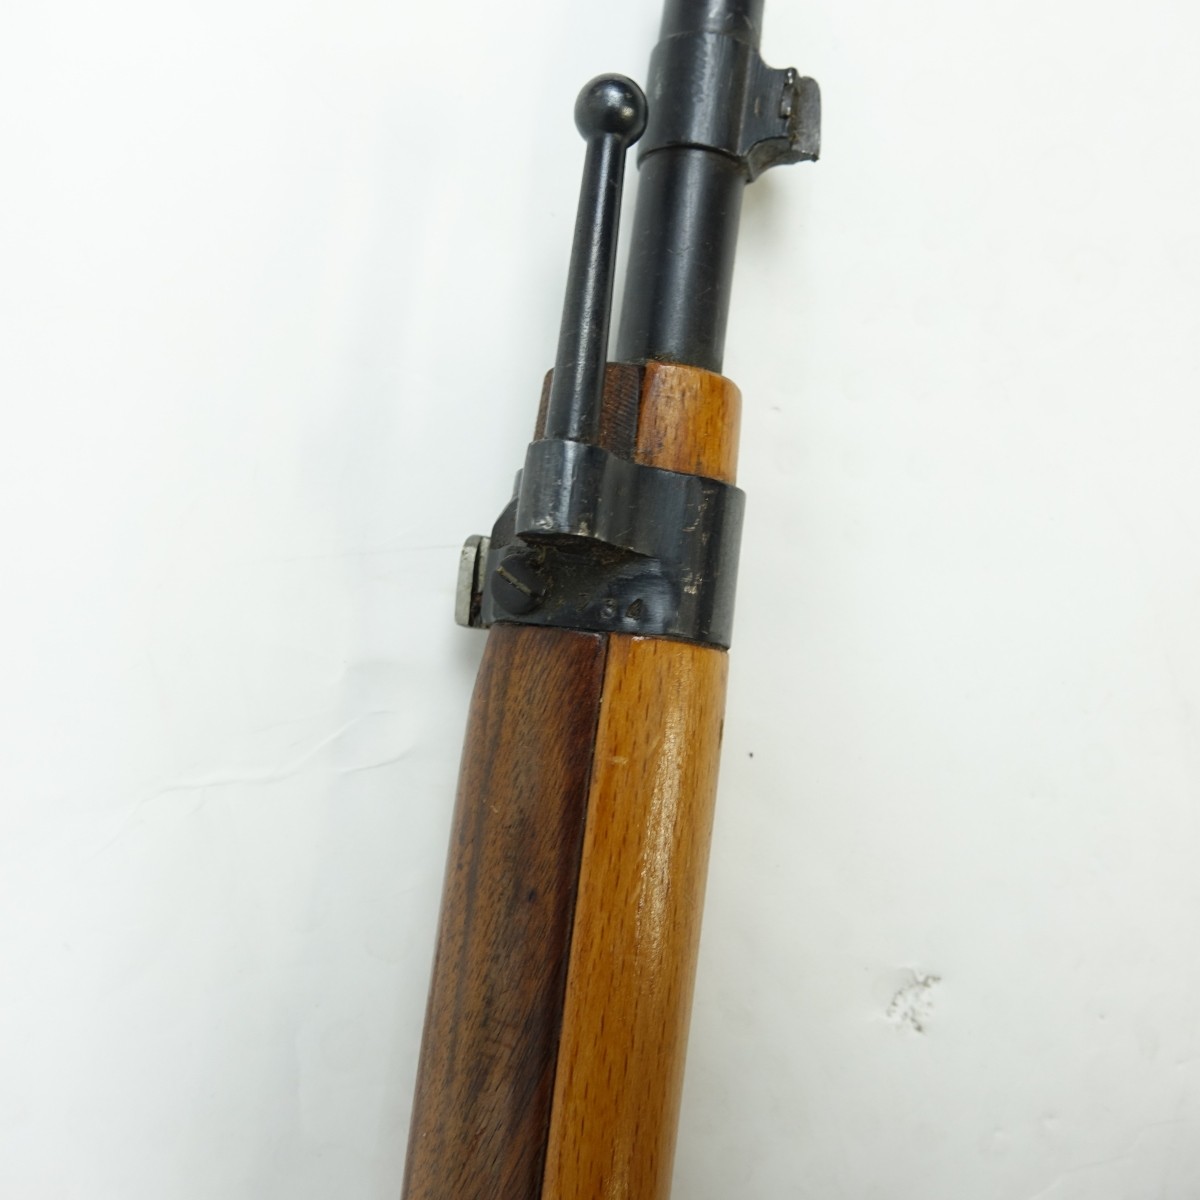 Antique Budapest M95 Bolt Action Rifle